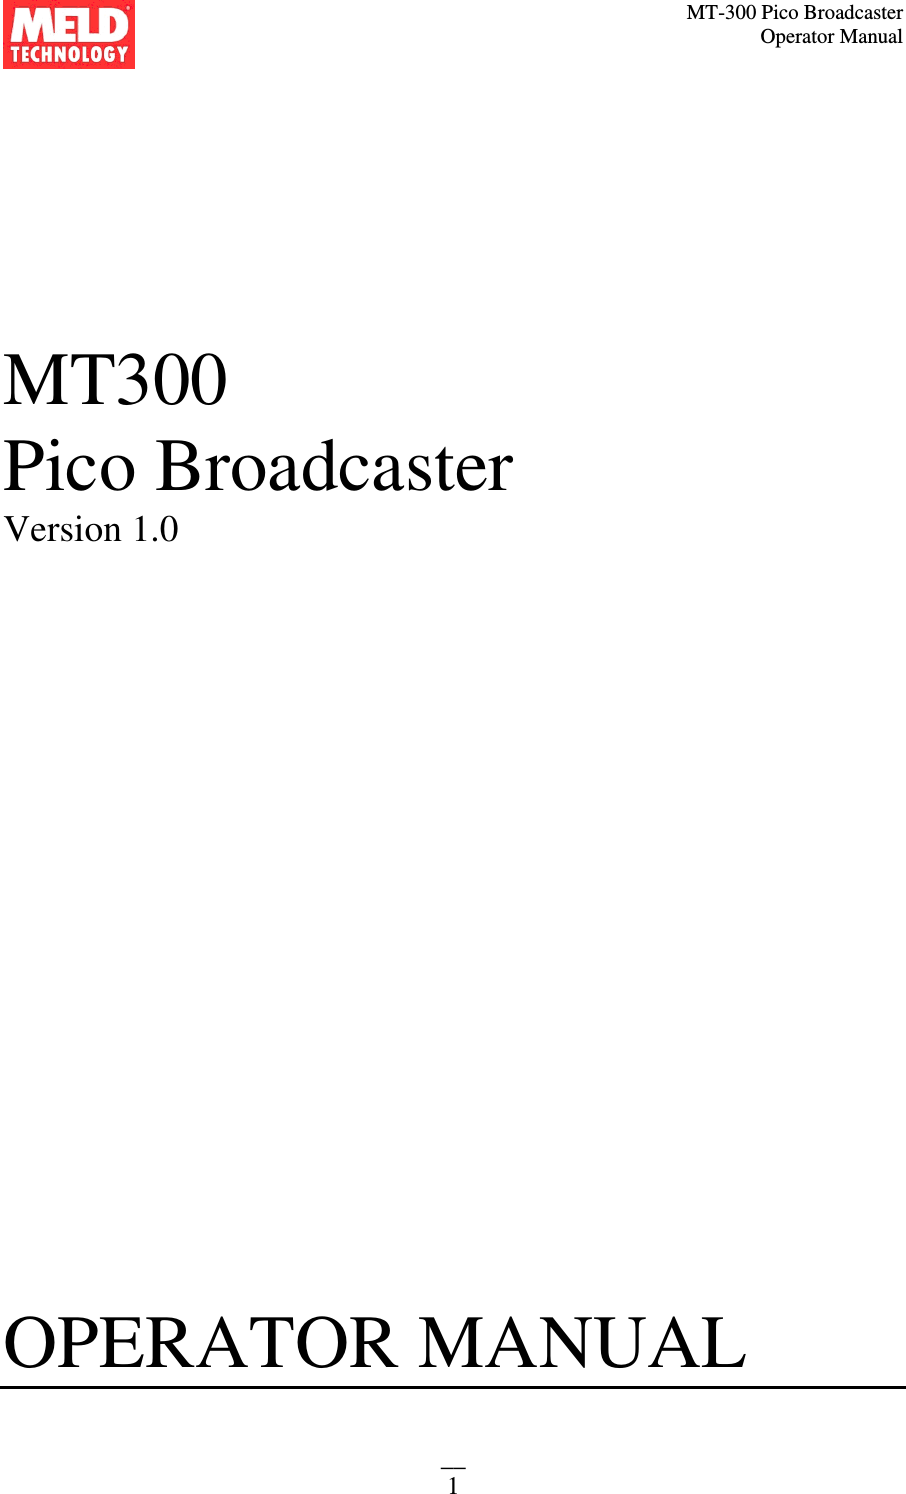 MT-300 Pico Broadcaster                                                                                                                                             Operator Manual __ 1    MT300 Pico Broadcaster  Version 1.0                         OPERATOR MANUAL    